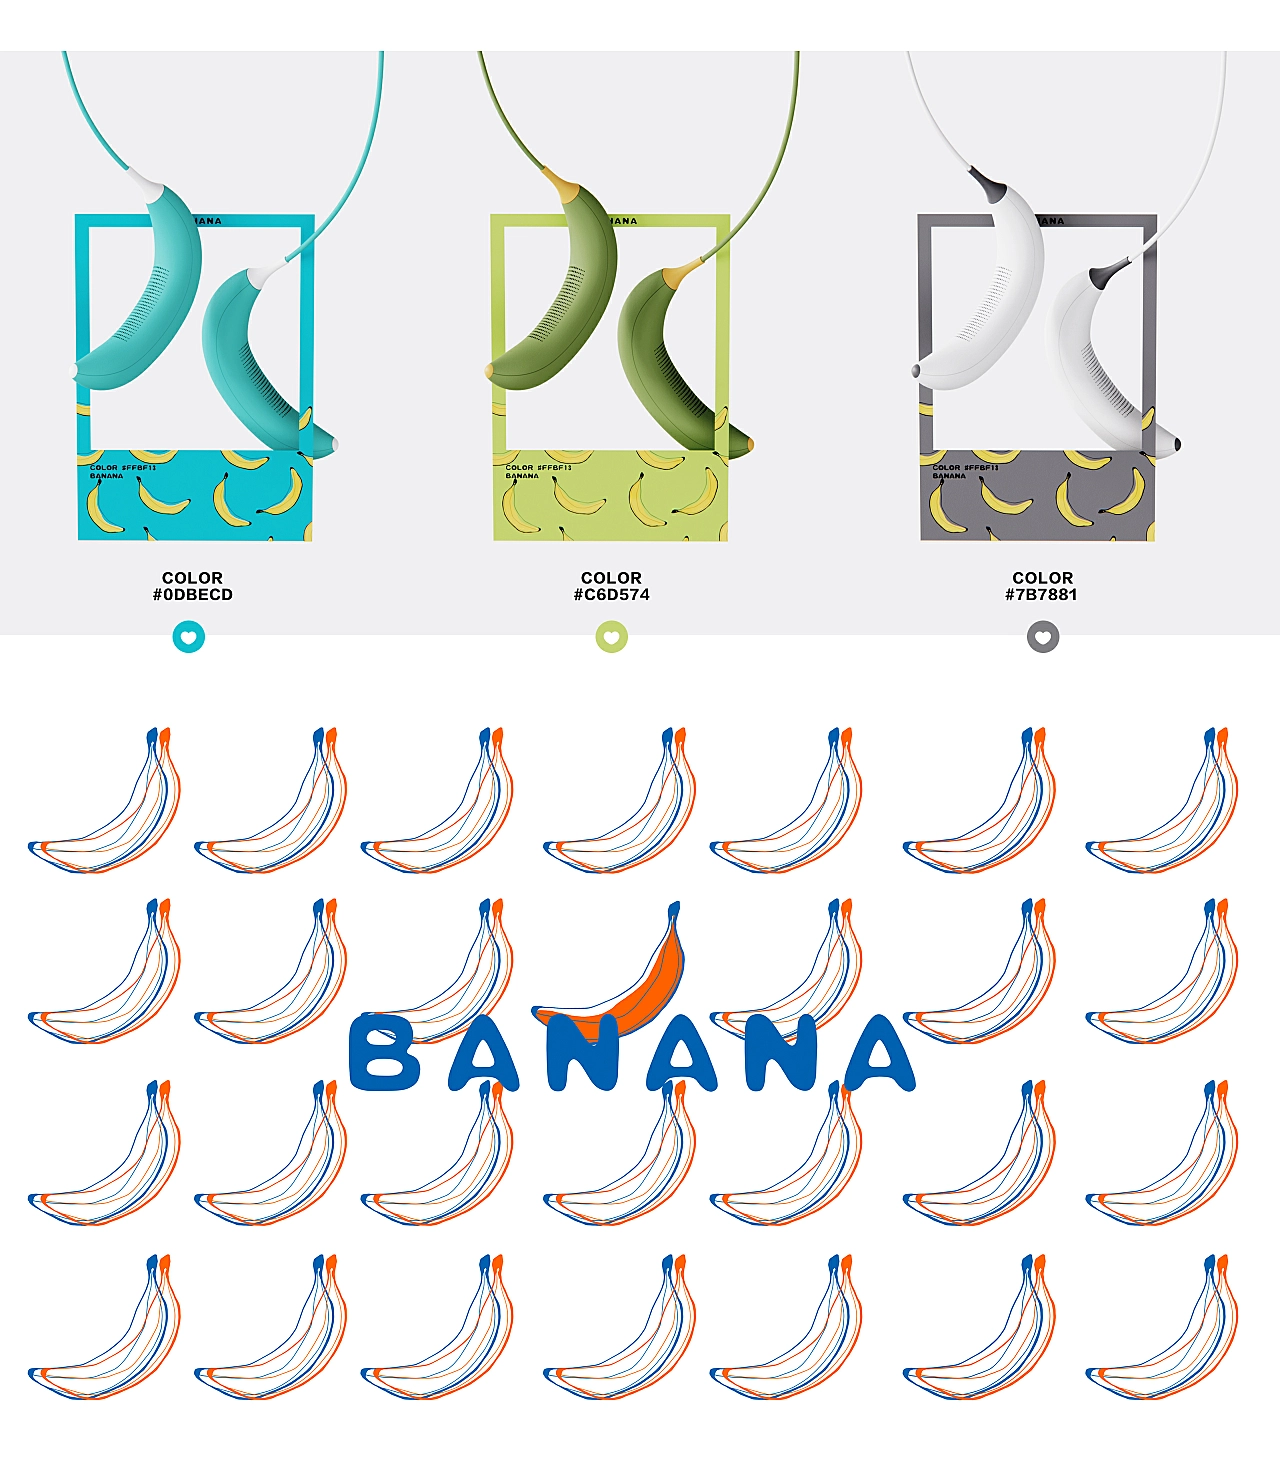 香蕉烘鞋器-Banana drying machine